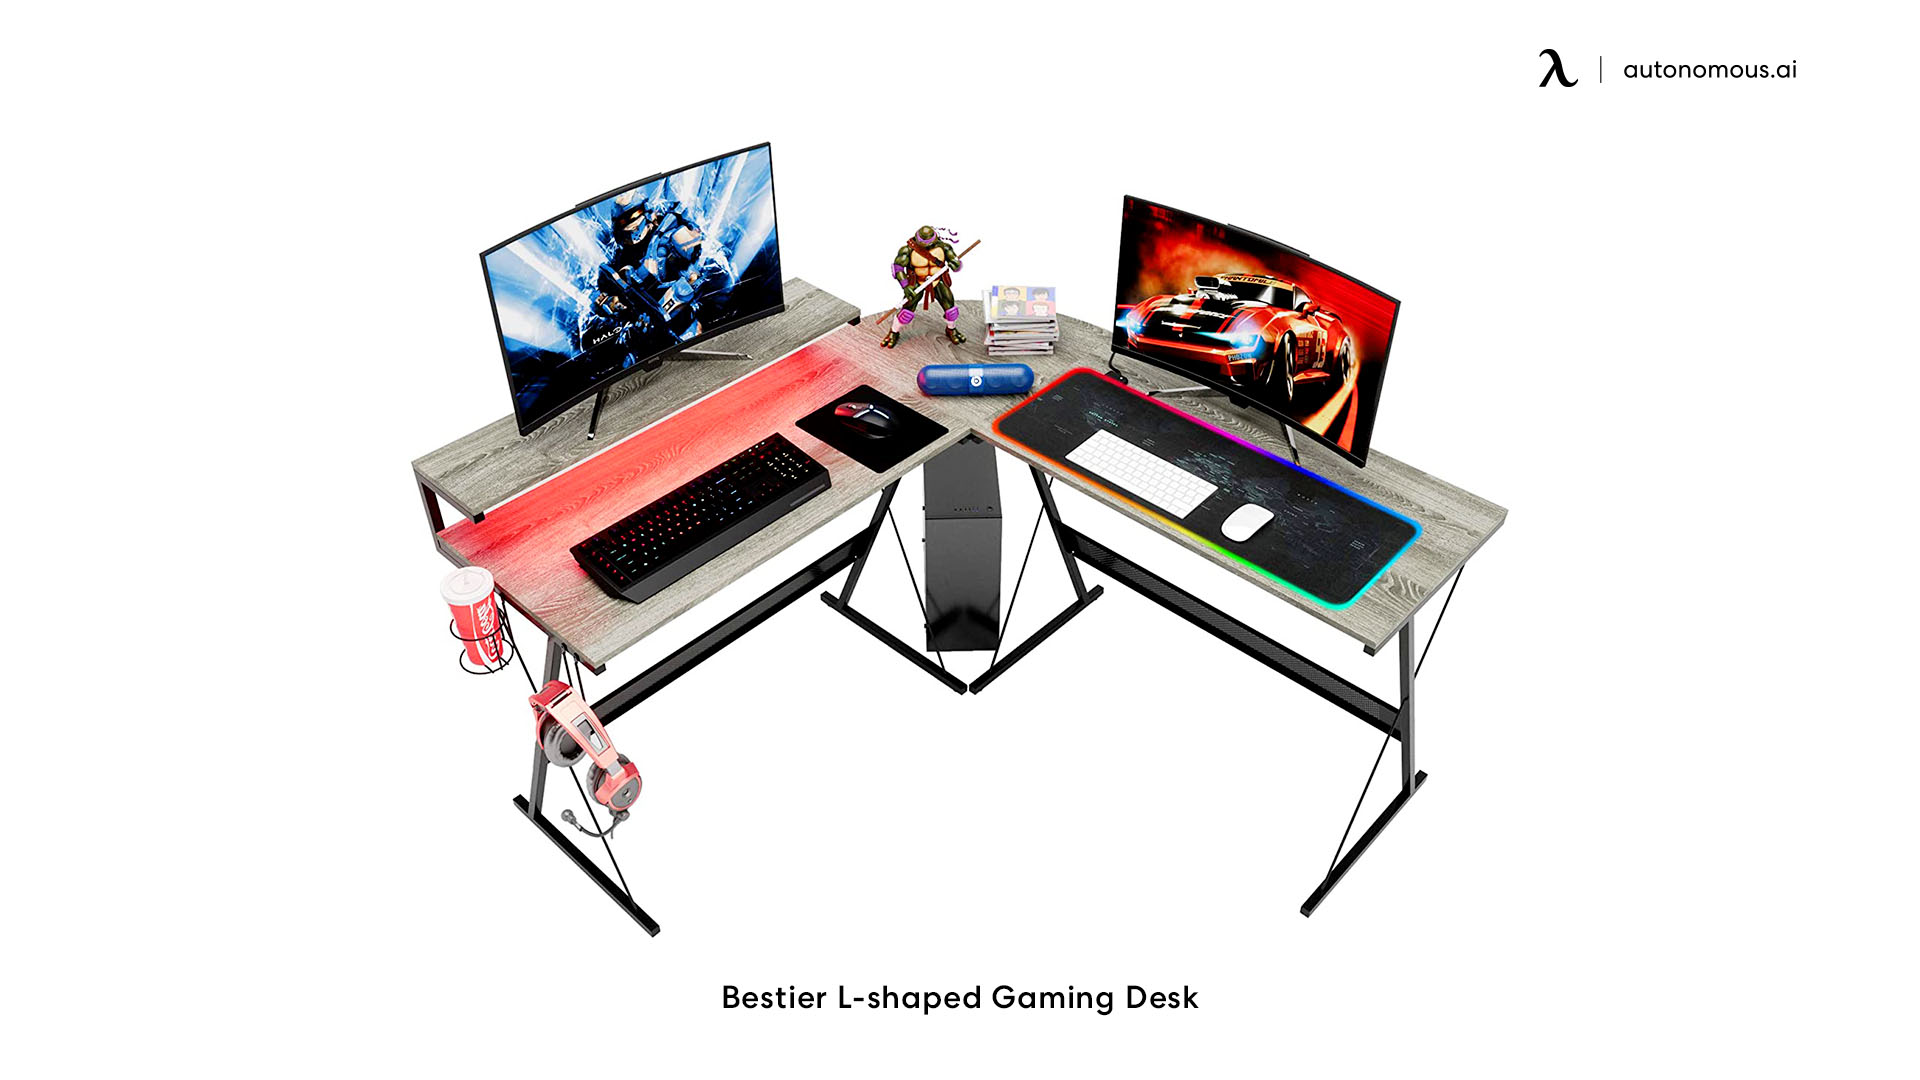 Bestier's L-shaped gaming desk